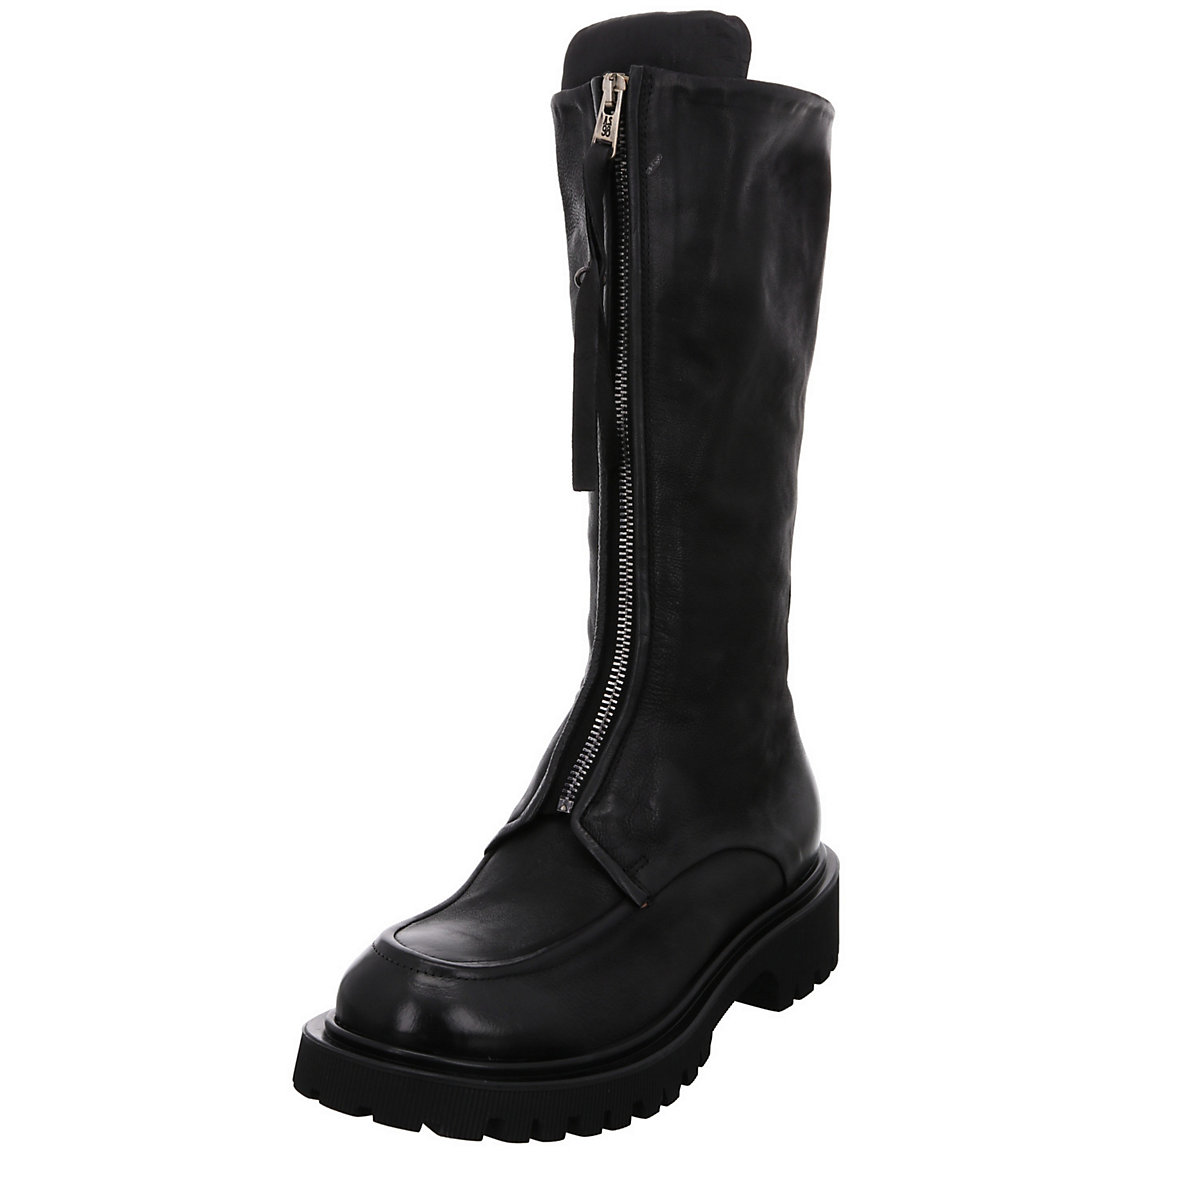 A.S.98 Damen Stiefel Schuhe Boots Elegant Klassisch Glattleder uni Klassische Stiefel schwarz